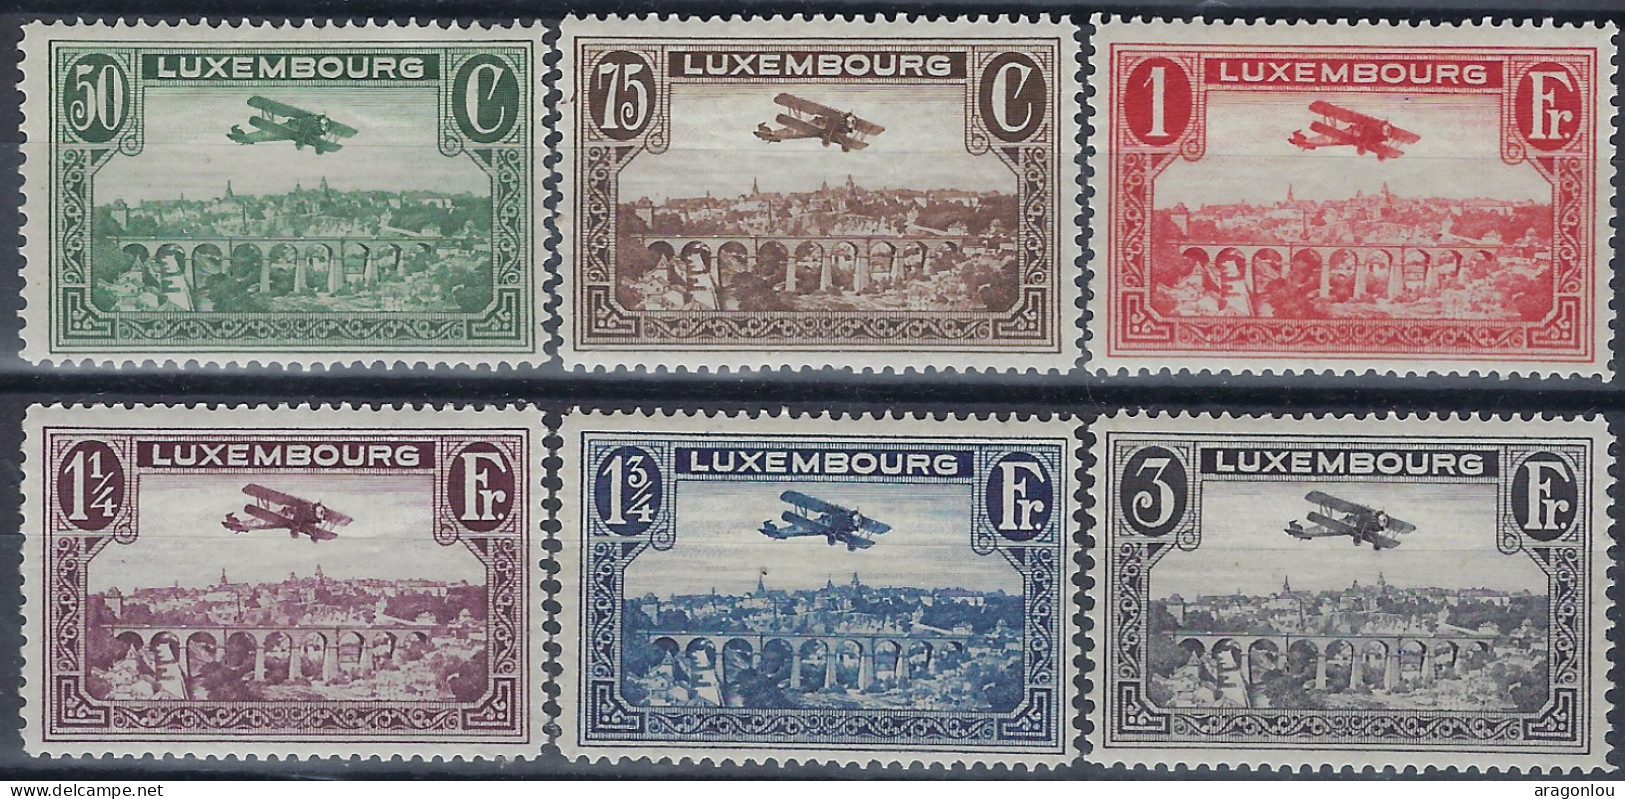 Luxembourg - Luxemburg - Timbres  1931      2 Séries   Biplan  Breguet     MNH** - Ongebruikt